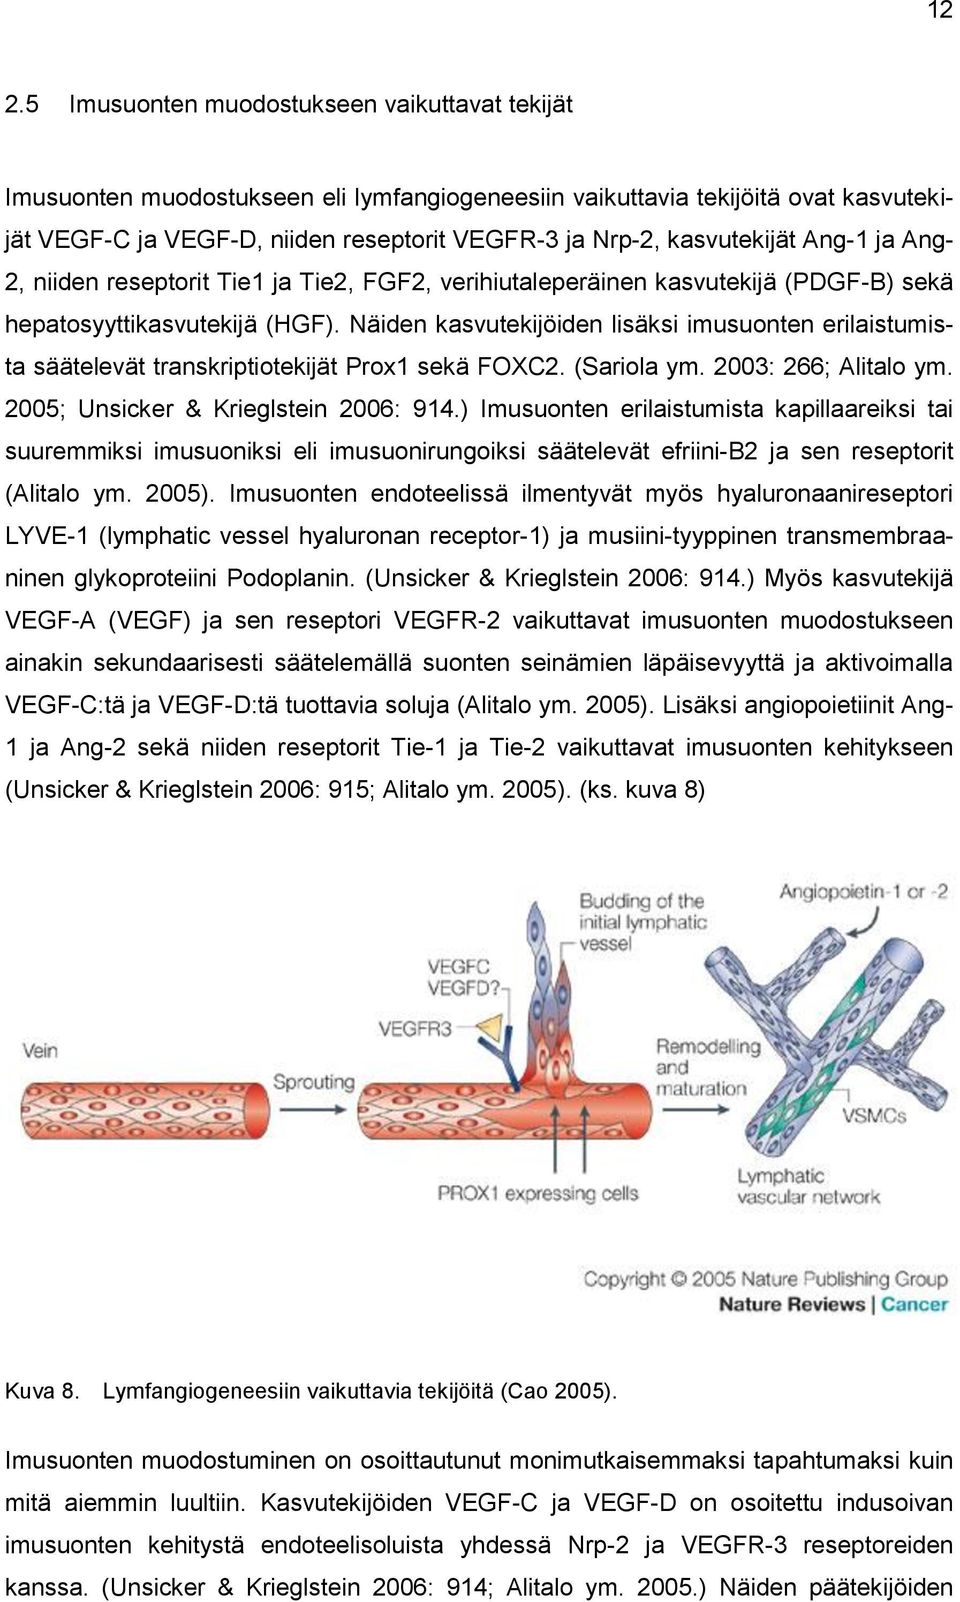 Näiden kasvutekijöiden lisäksi imusuonten erilaistumista säätelevät transkriptiotekijät Prox1 sekä FOXC2. (Sariola ym. 2003: 266; Alitalo ym. 2005; Unsicker & Krieglstein 2006: 914.